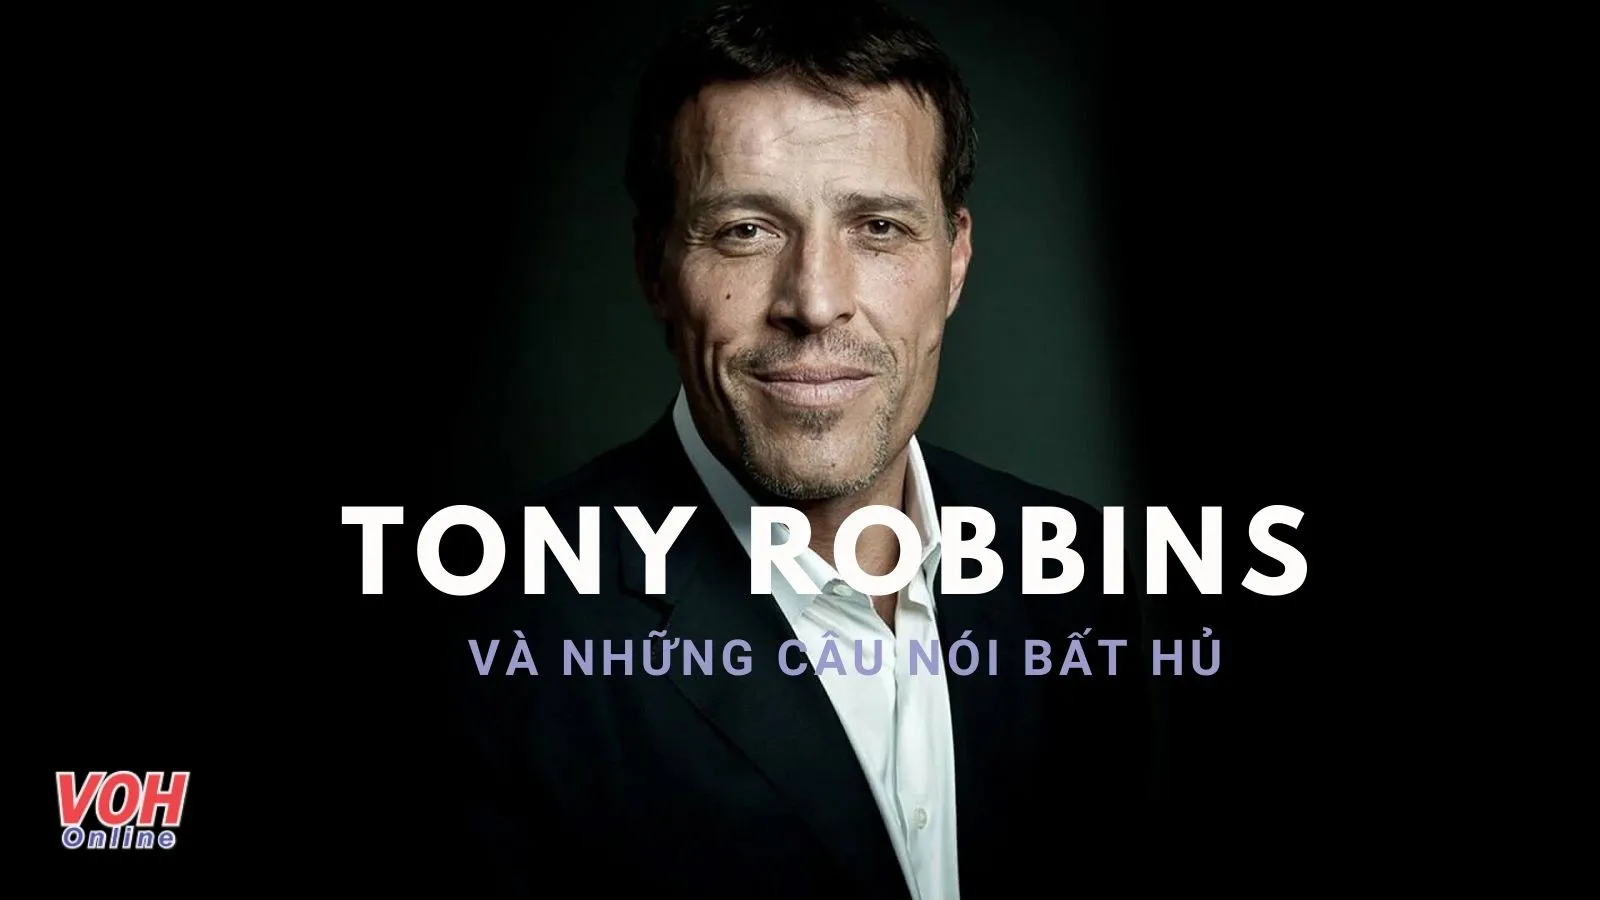 Tony Robbins là ai? Những câu nói hay của Tony Robbins